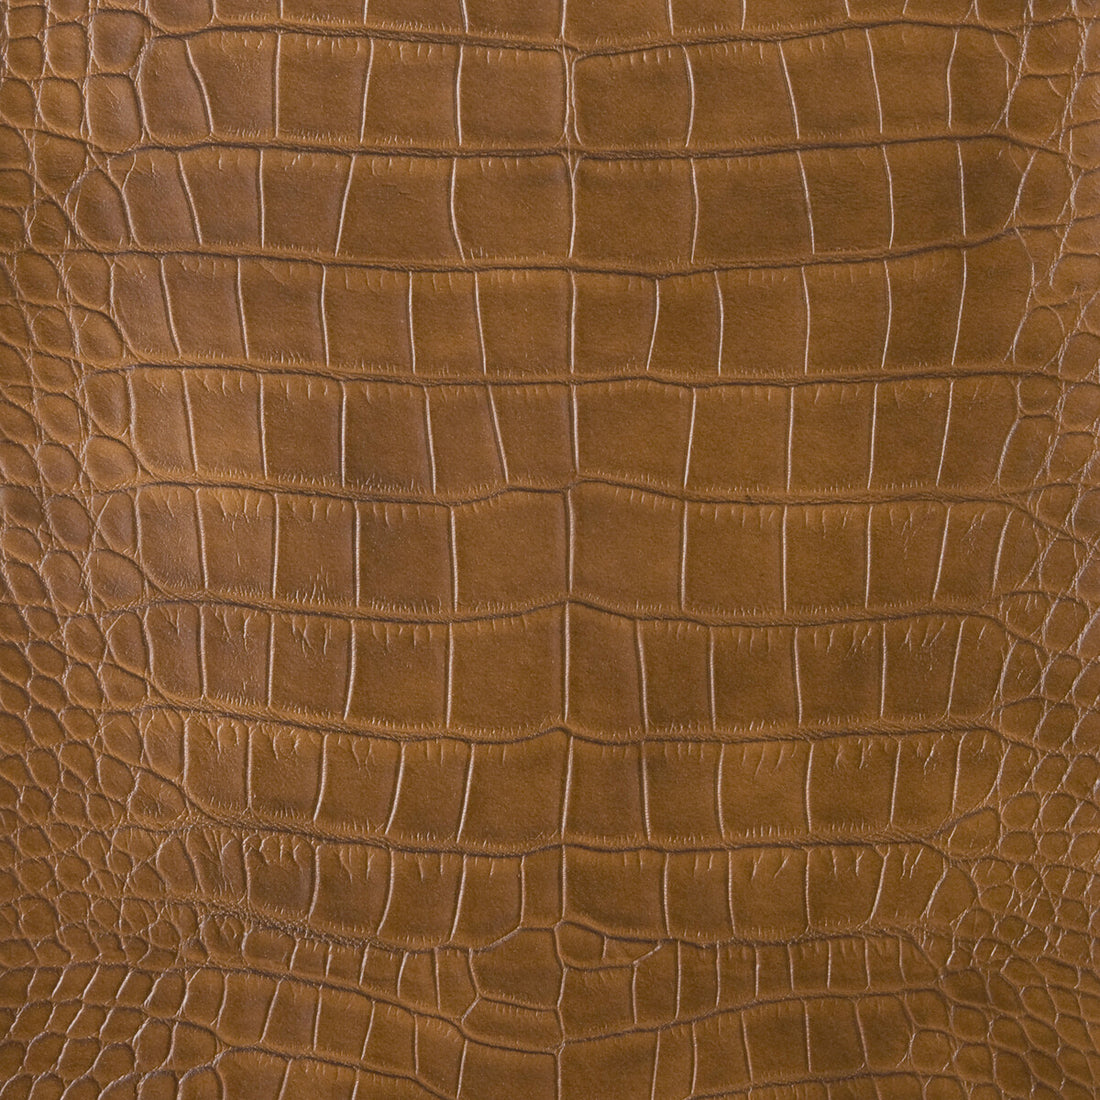 Kravet Design fabric in ankora-616 color - pattern ANKORA.616.0 - by Kravet Design